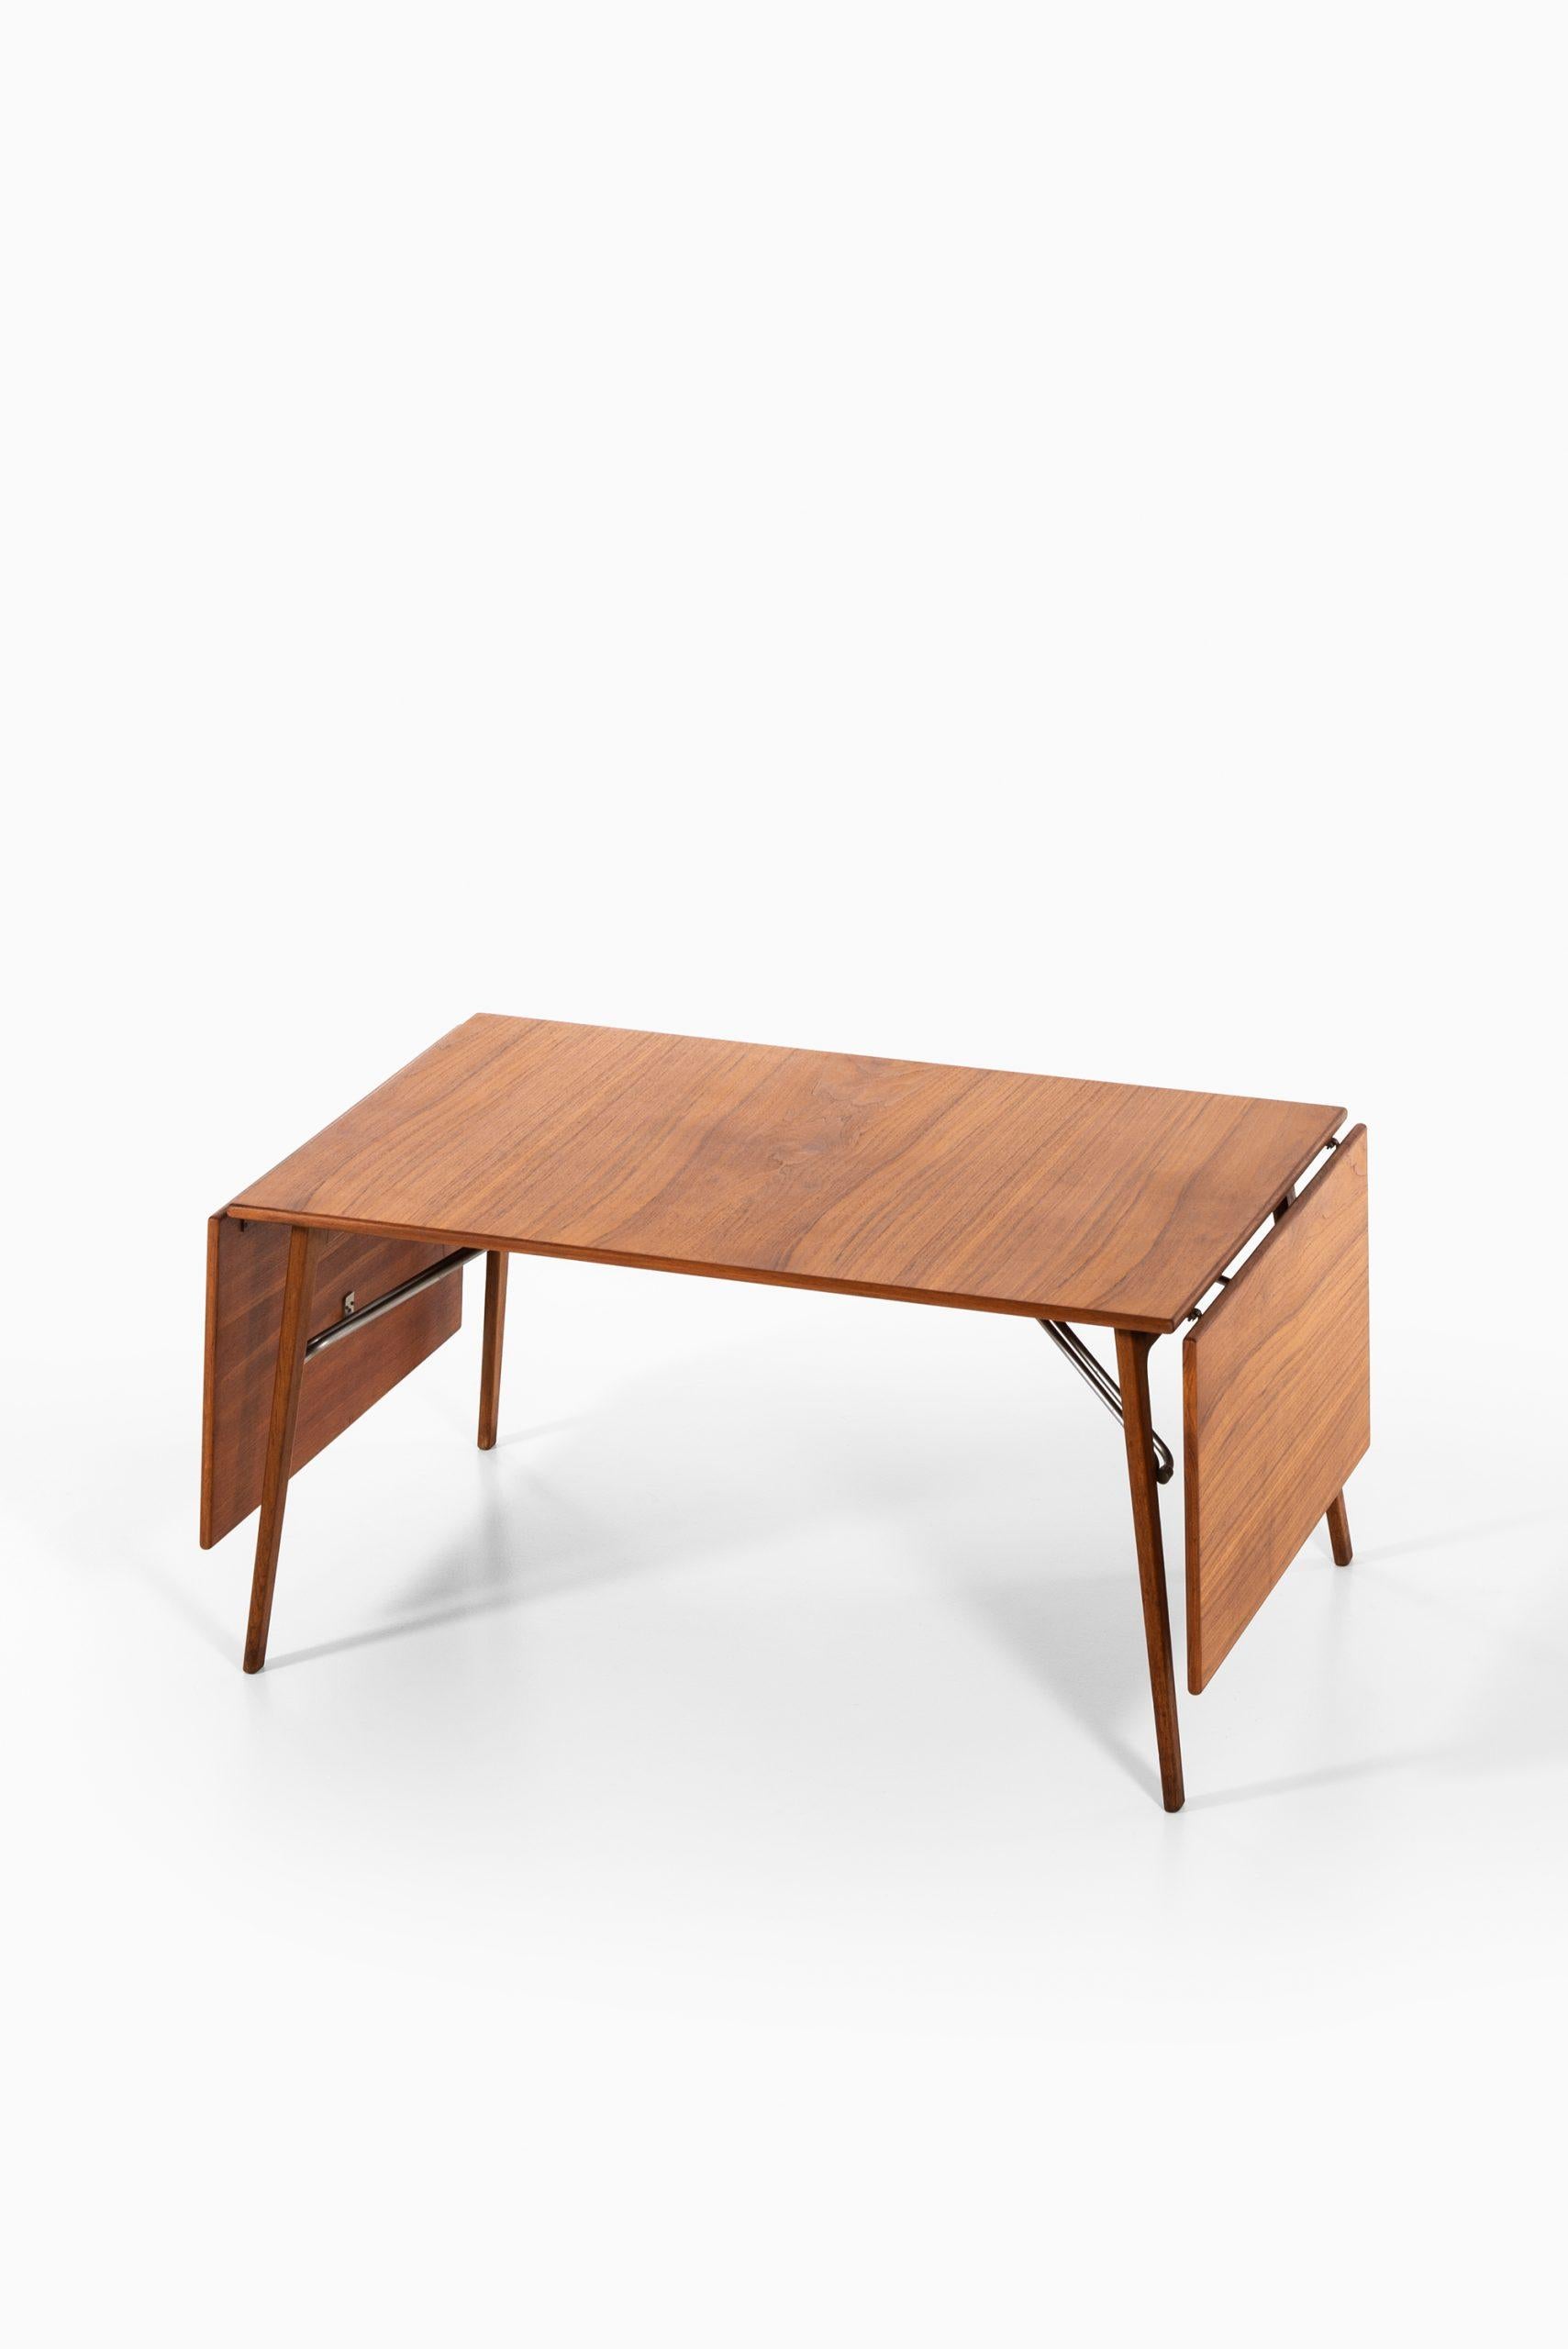 Rare dining table or desk designed by Børge Mogensen. Produced by Søborg møbler in Denmark.